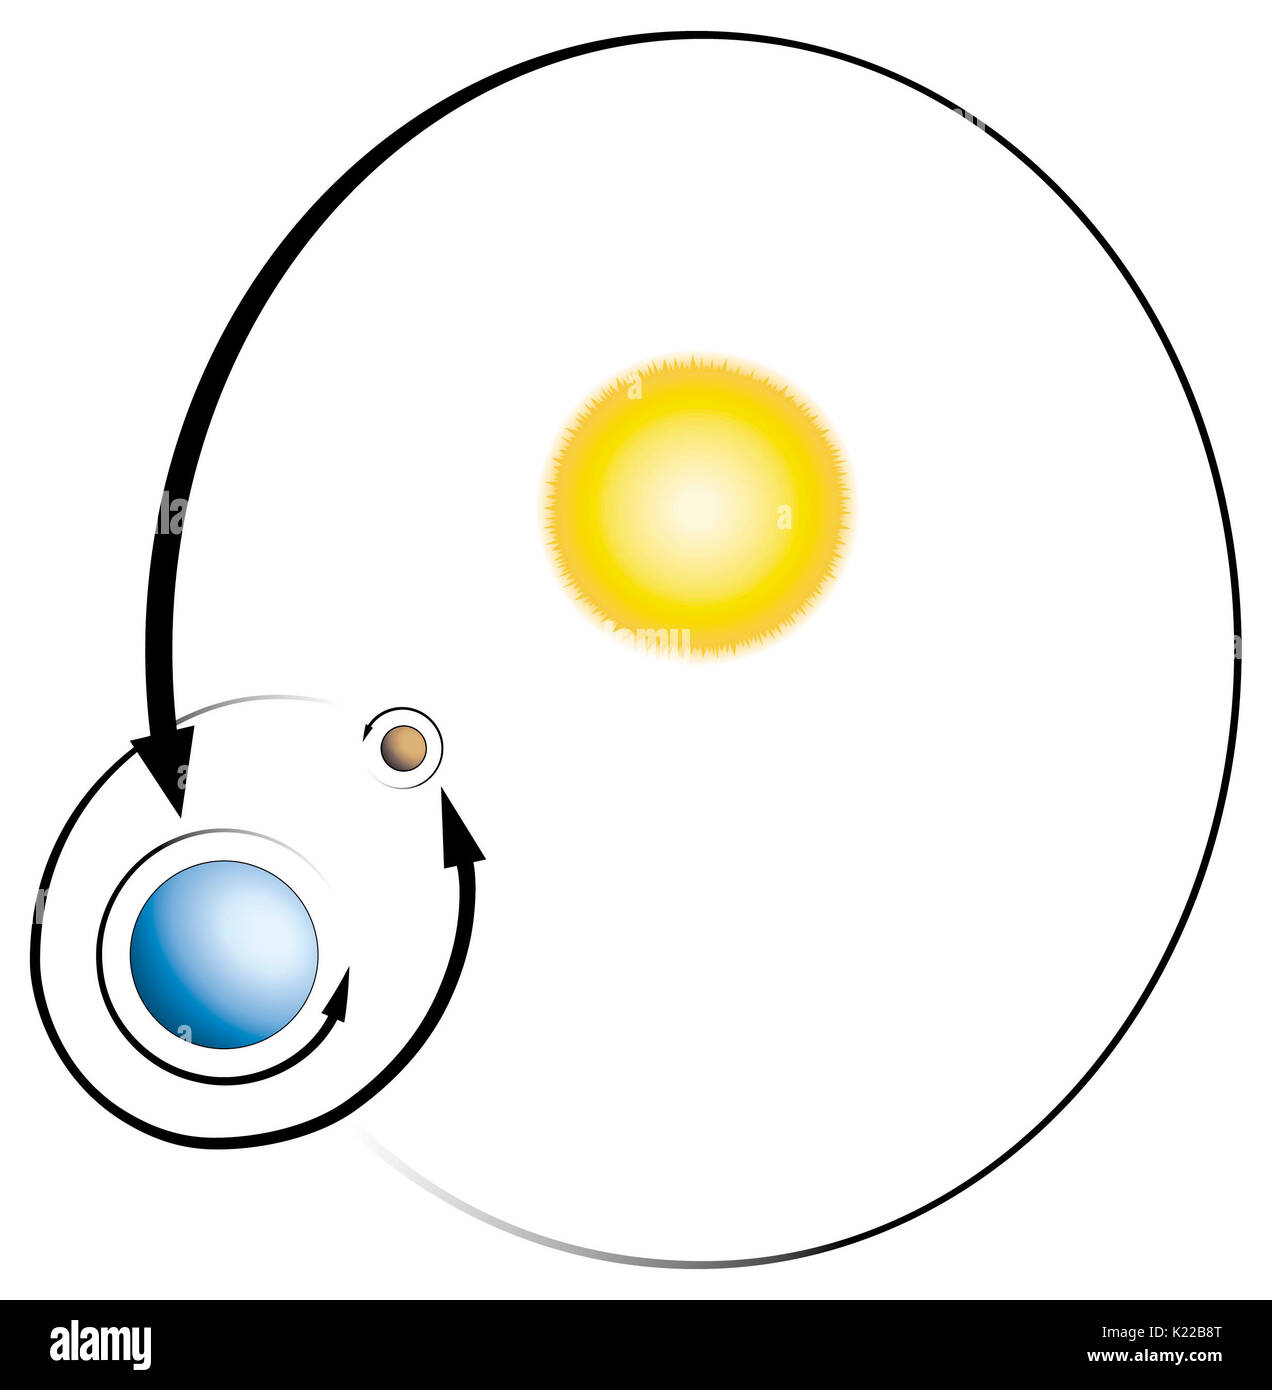 Im allgemeinen, ein Stern (z.b. die Sonne) ist ein himmlischer Körper strahlt, dass eine große Menge von Energie (Licht und Wärme). Ein Planet ist ein Körper, der Umlaufbahnen ein Star und spiegelt ein Teil dieser Energie; einen natürlichen Satelliten (oder Mond) dreht sich um einen Planeten. Alle neun Planeten in ihrer Umlaufbahn um die Sonne gegen den Uhrzeigersinn. Mit Ausnahme von Venus und Uranus, die sie auch gegen den Uhrzeigersinn drehen auf ihrer Achse. Stockfoto